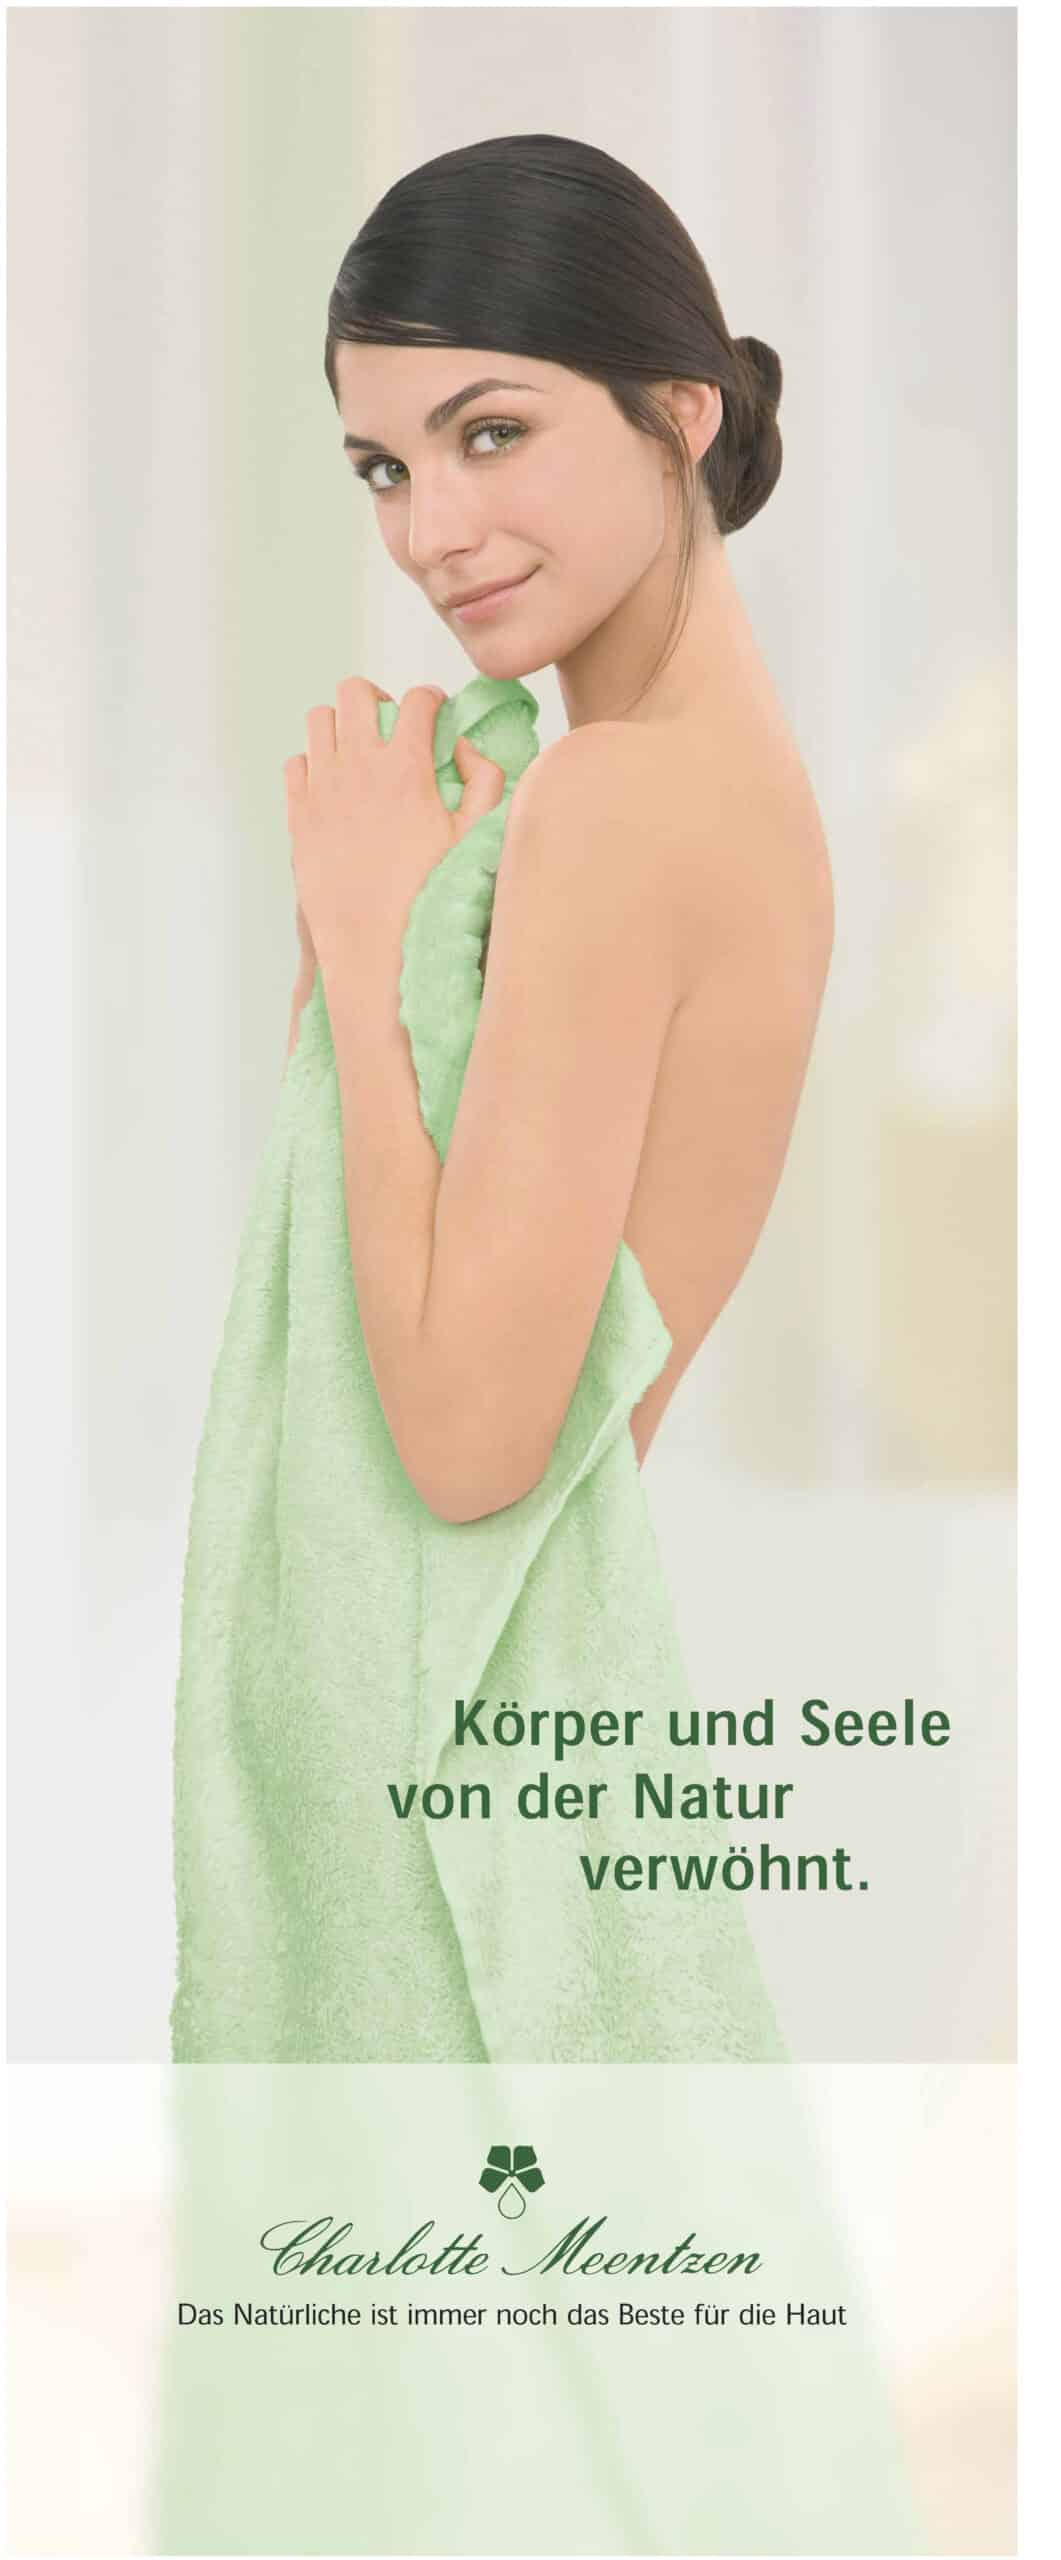 Eine in ein grünes Handtuch gehüllte Frau lächelt vor einem hellen Hintergrund über ihre Schulter, während der deutsche Text eine natürliche Verwöhnung für Körper und Seele andeutet. © Fotografie Tomas Rodriguez